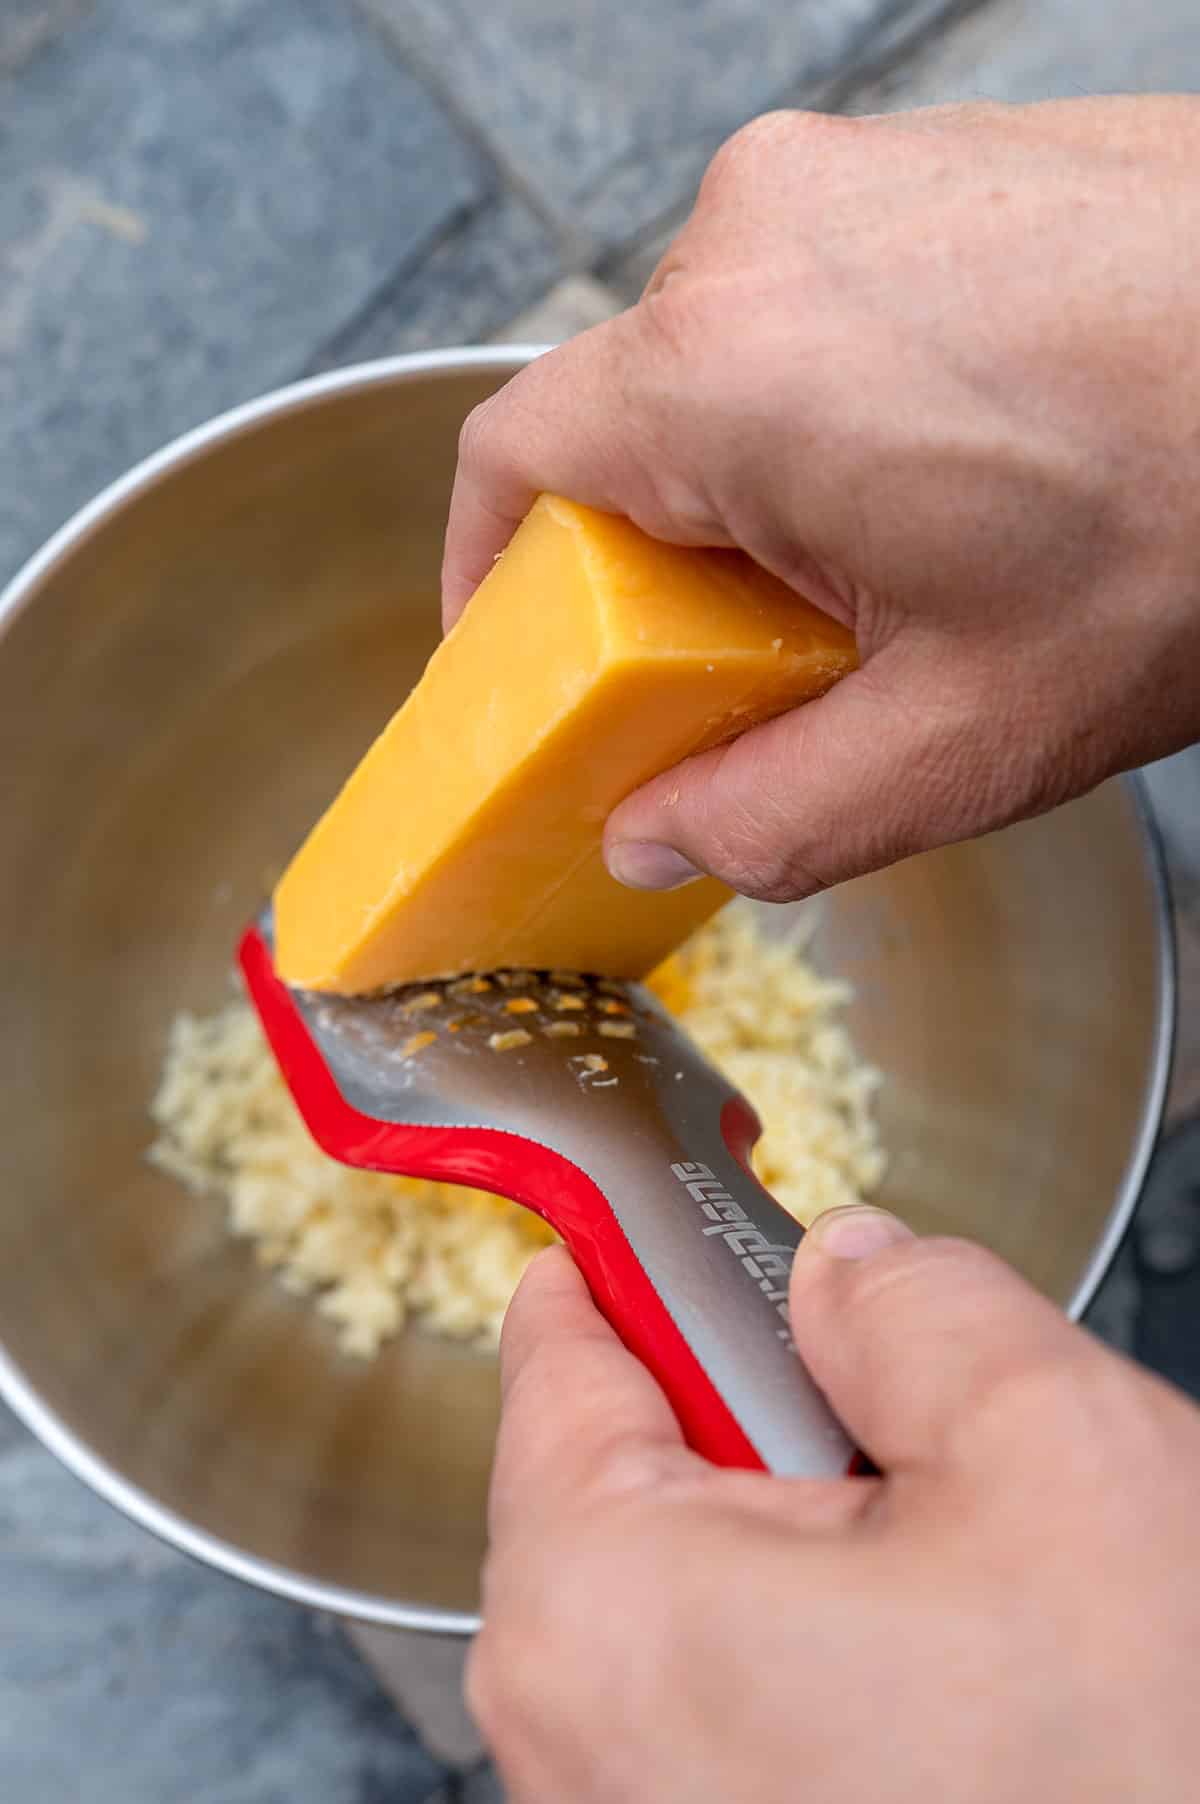 Shredding cheddar cheese into a bowl.